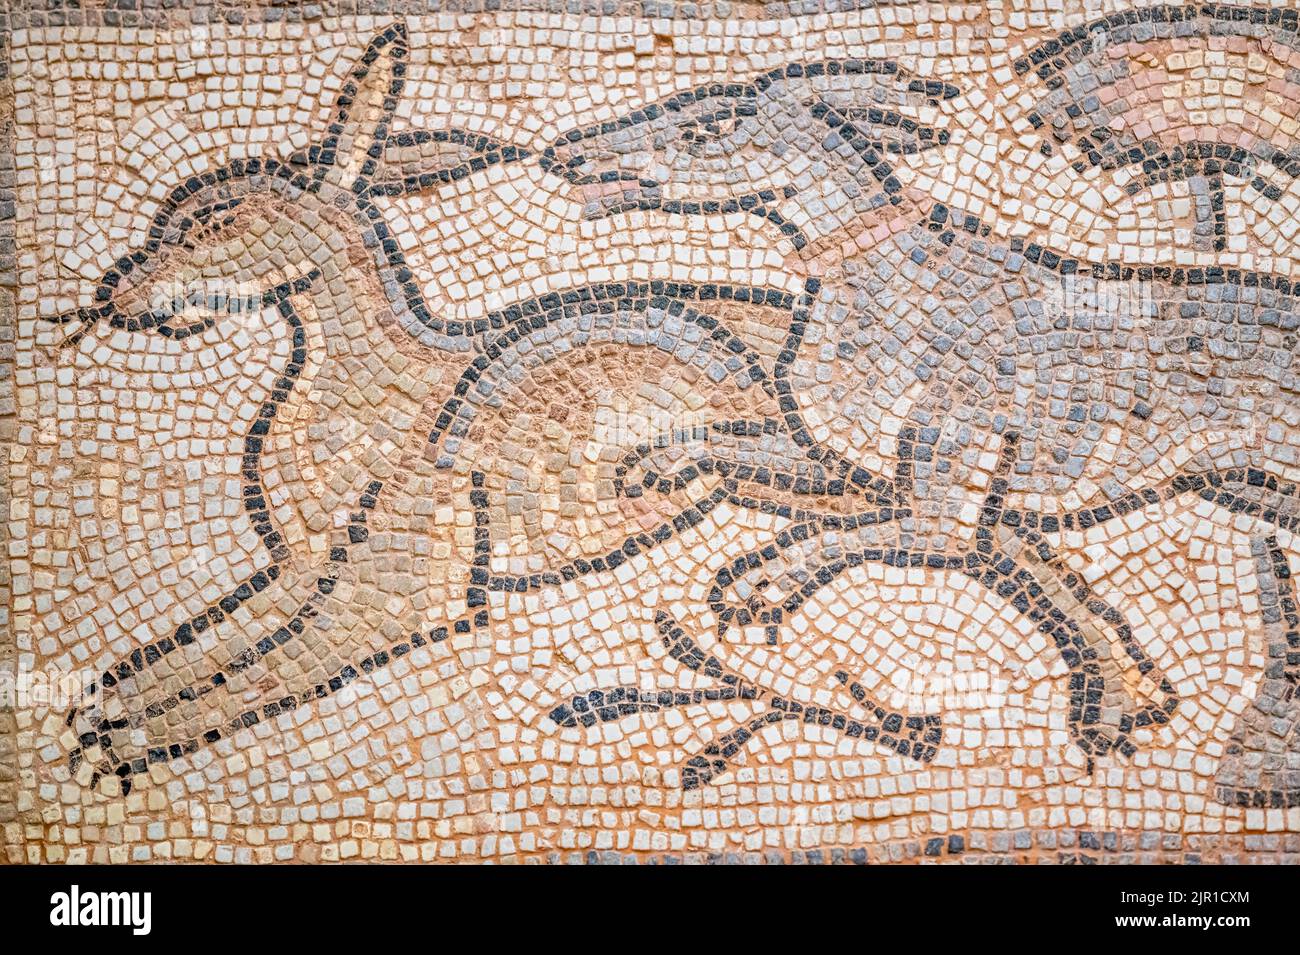 Bodenmosaik aus Kalkstein und Tesserae. Ein Stück aus Syrien und datiert etwa in die Jahre 350-400 n. Chr. Gegenstand gesehen in der Royal Ontario Mus Stockfoto